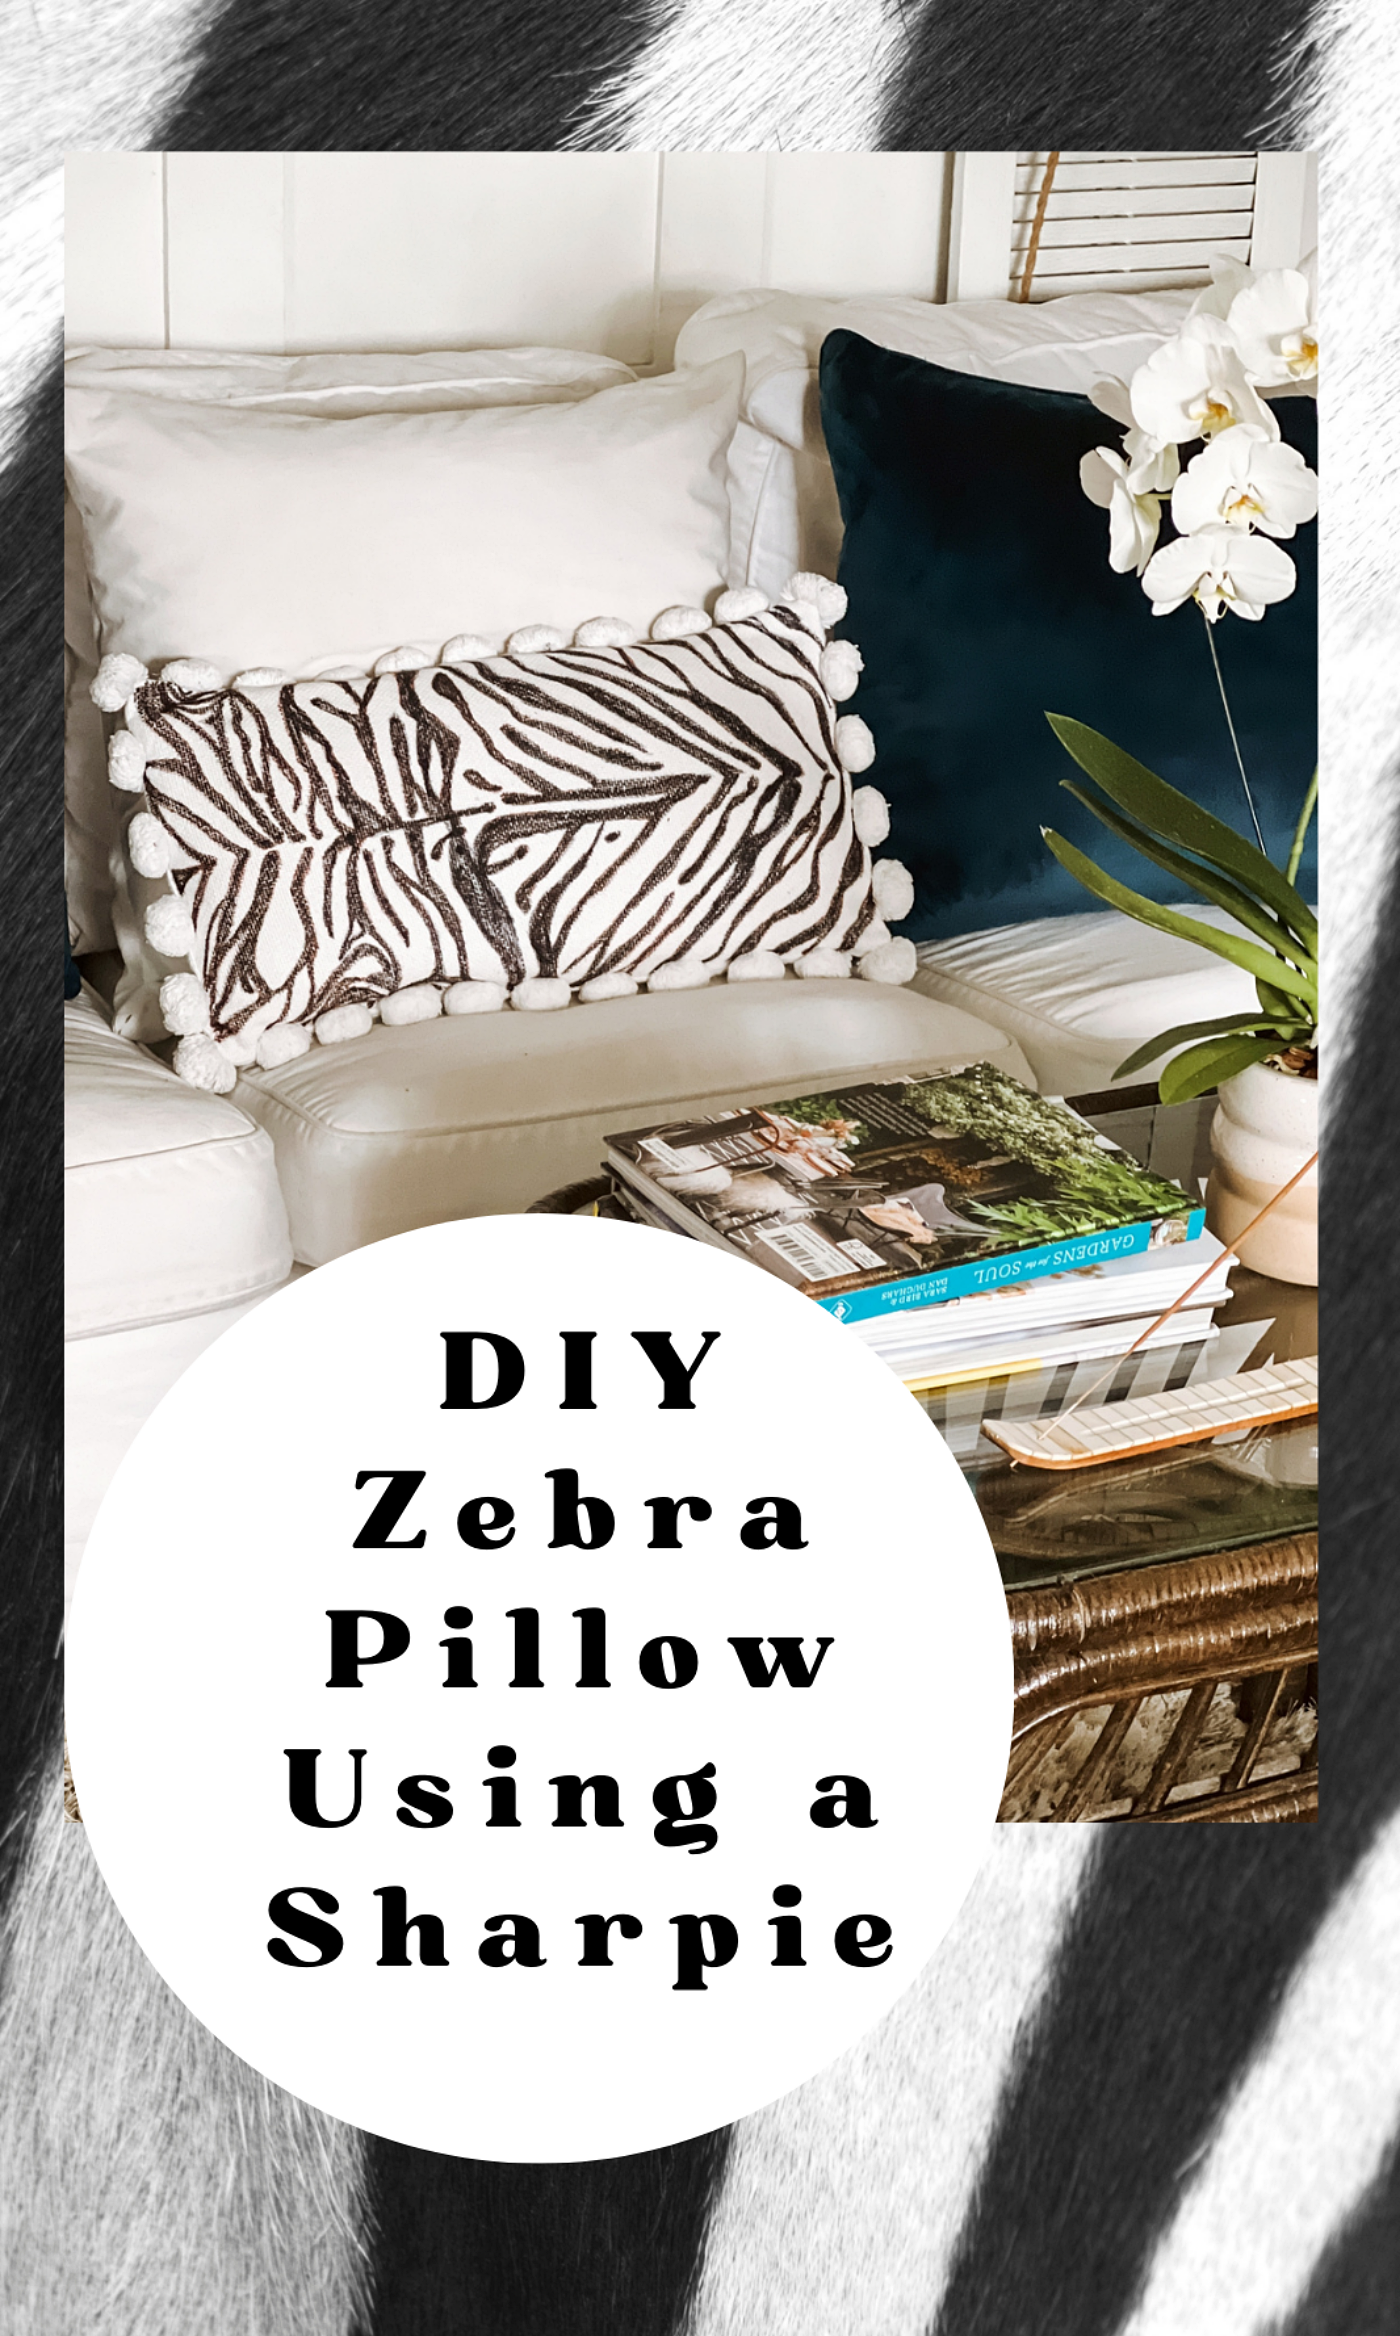 DIY Zebra Pillow Using a Sharpie Marker